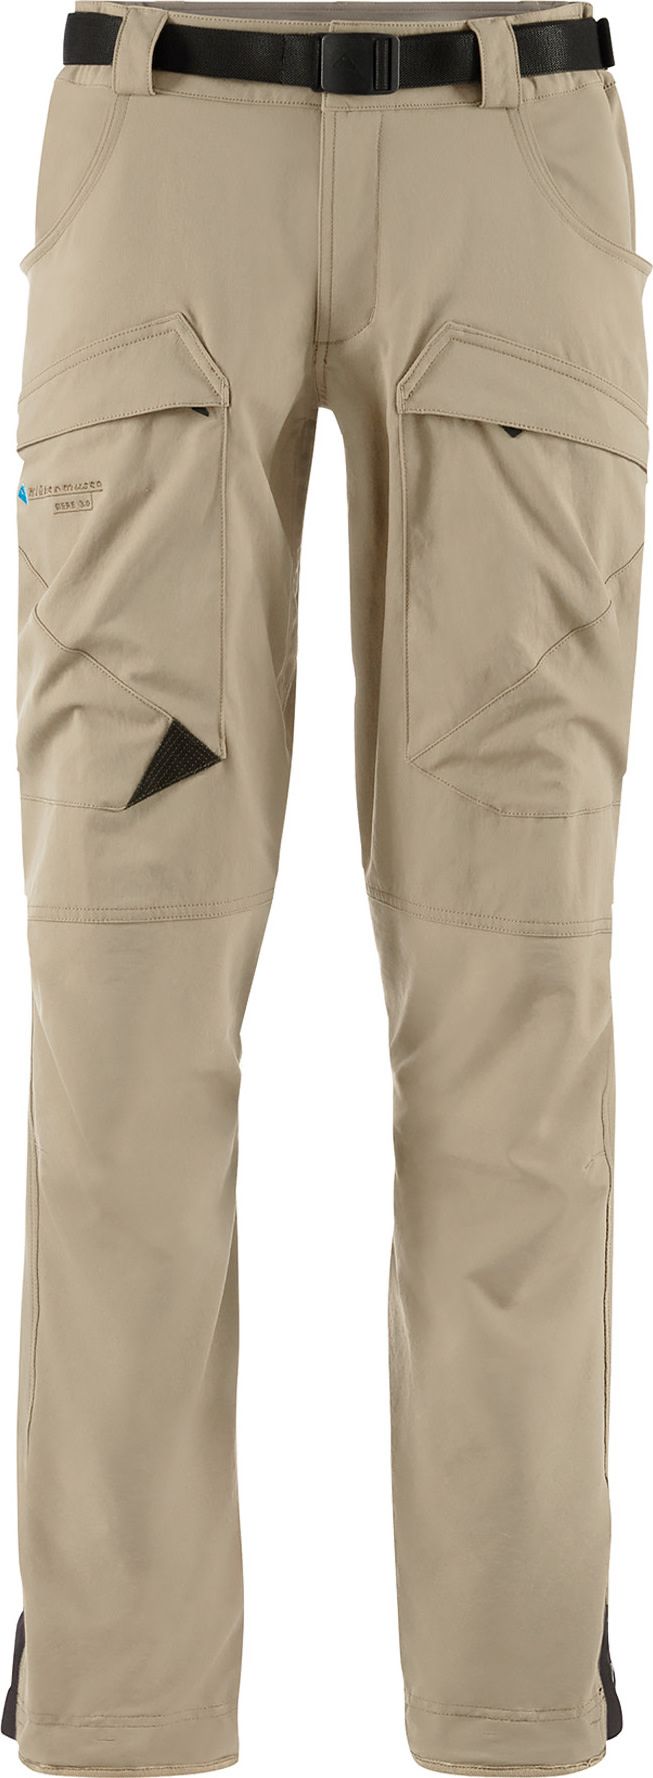 Men's Gere 3.0 Pants Regular Khaki